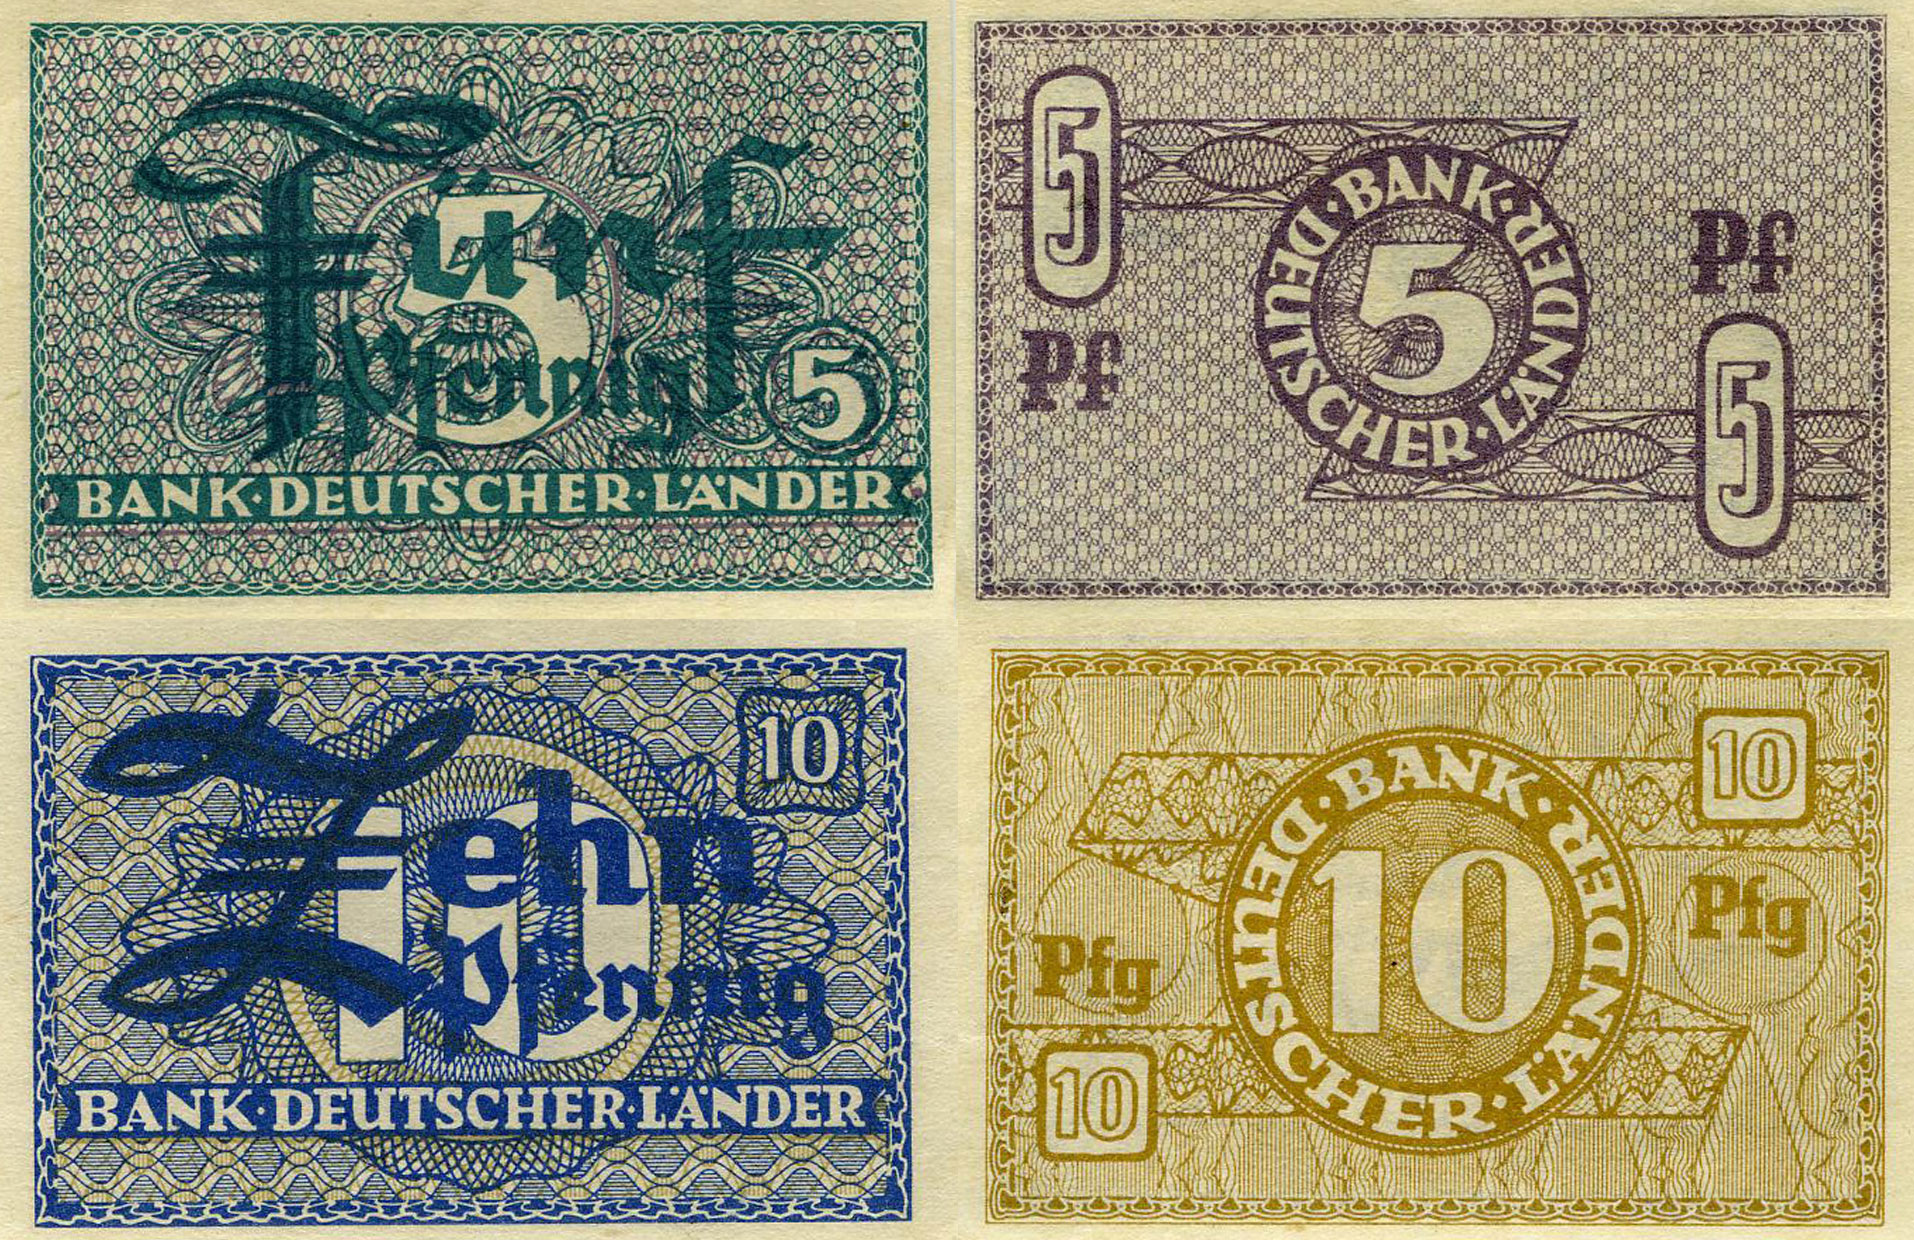 Kleingeldscheine 5 und 10 Pfennig, 1948 © DHM